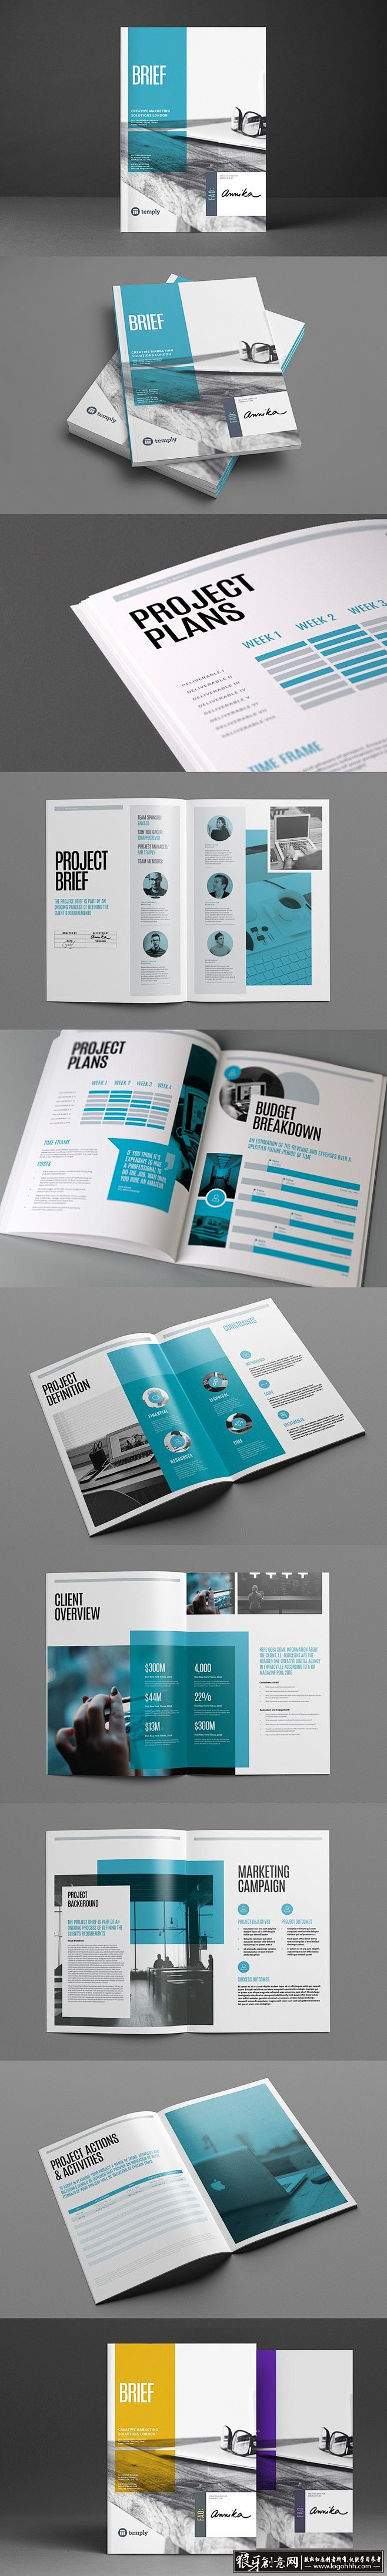 [创意画册] 商务科技画册设计欣赏 蓝色...